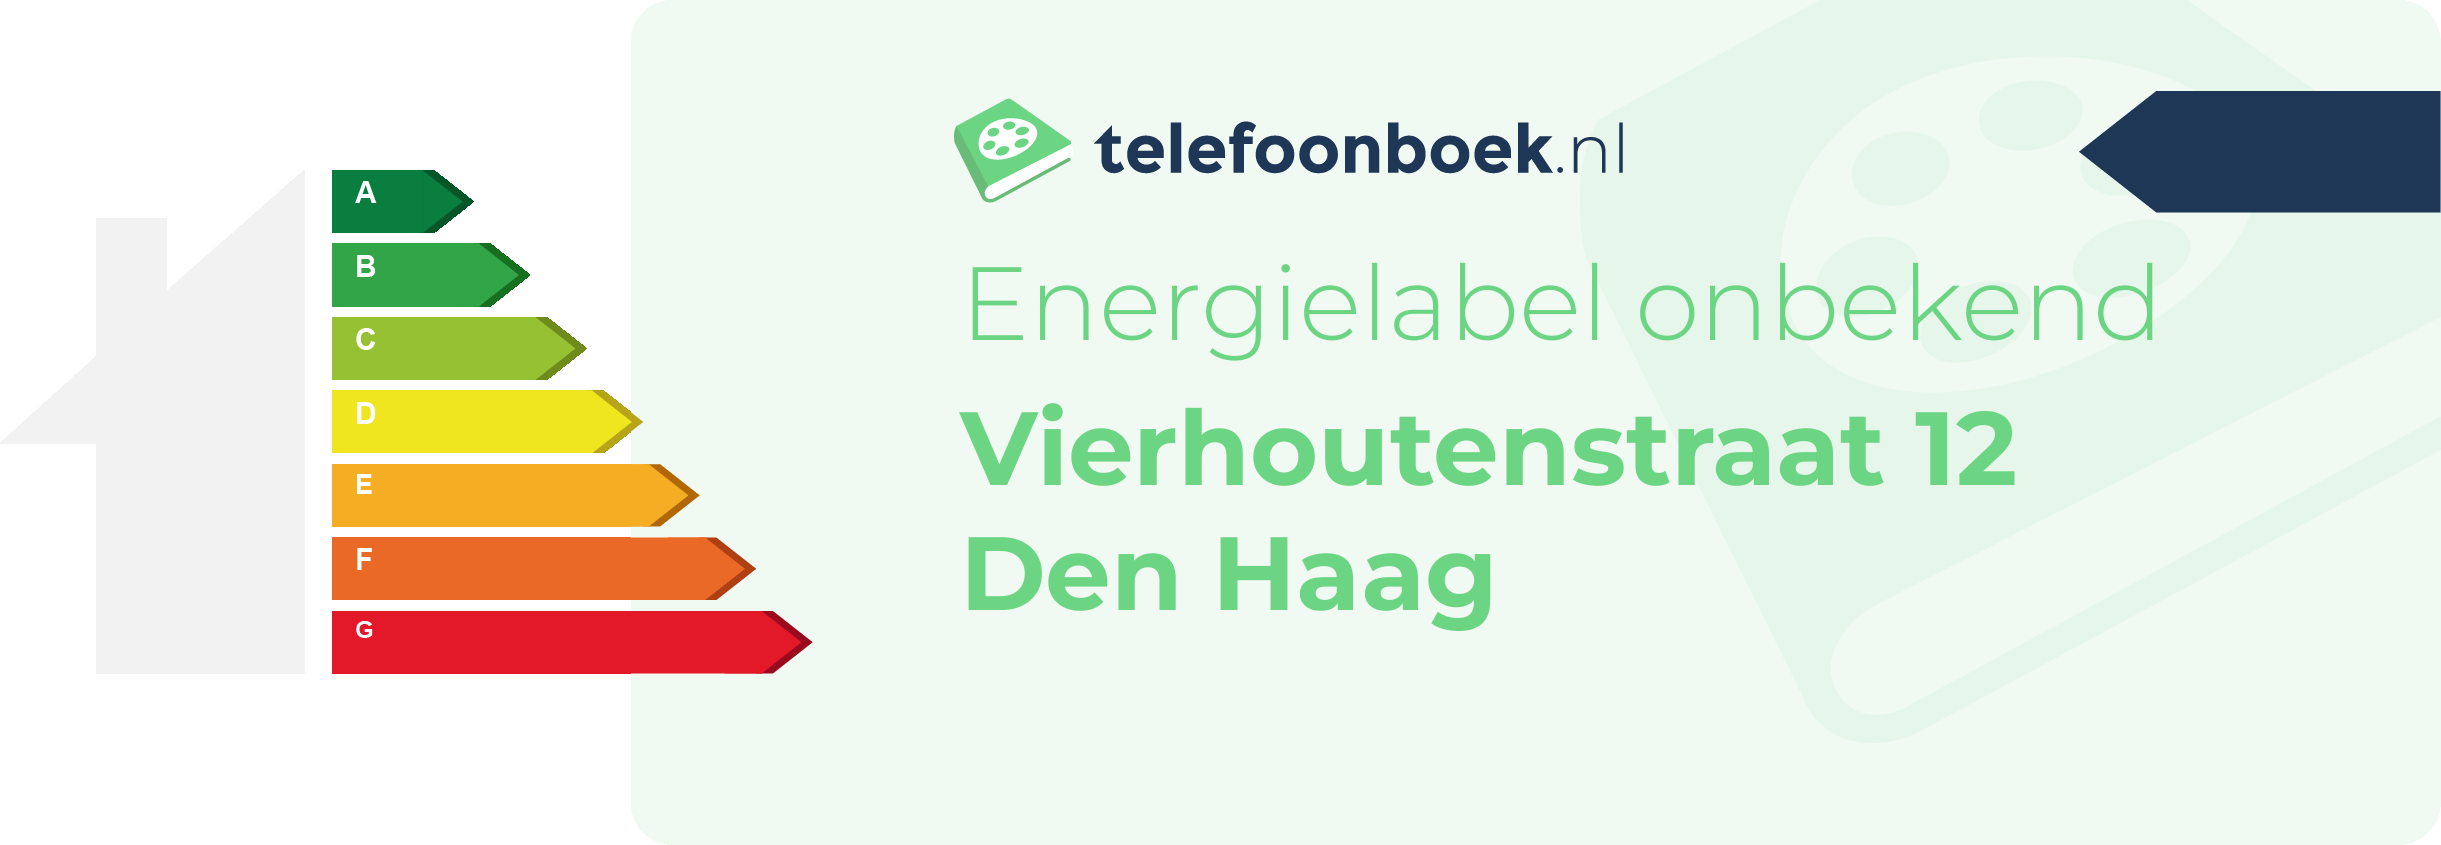 Energielabel Vierhoutenstraat 12 Den Haag